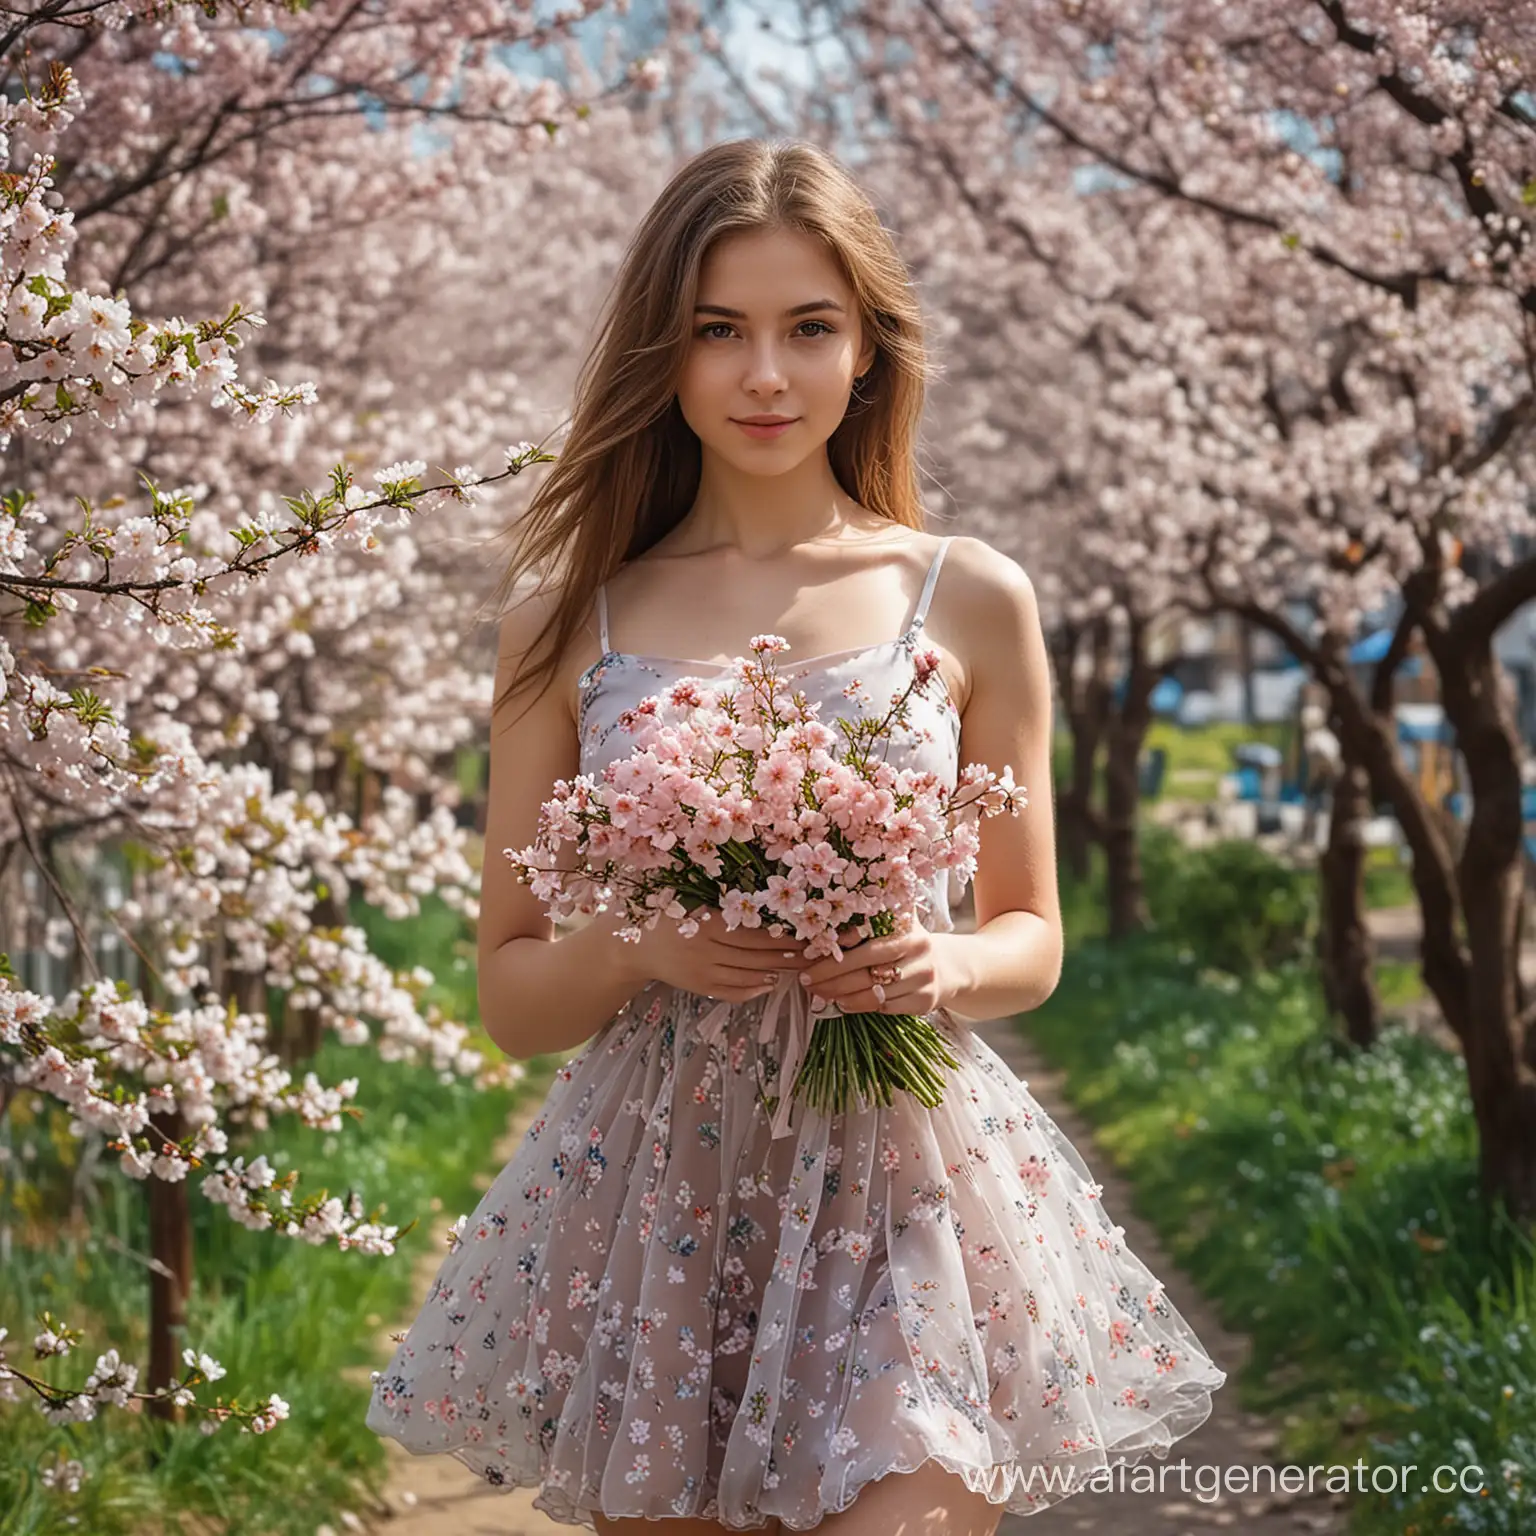 Сад сакуры, молодая 18 лет русская красивая сельская девушка с букетом цветов, полупрозрачный сарафан супер короткий и сексуальный, длинные русые косы